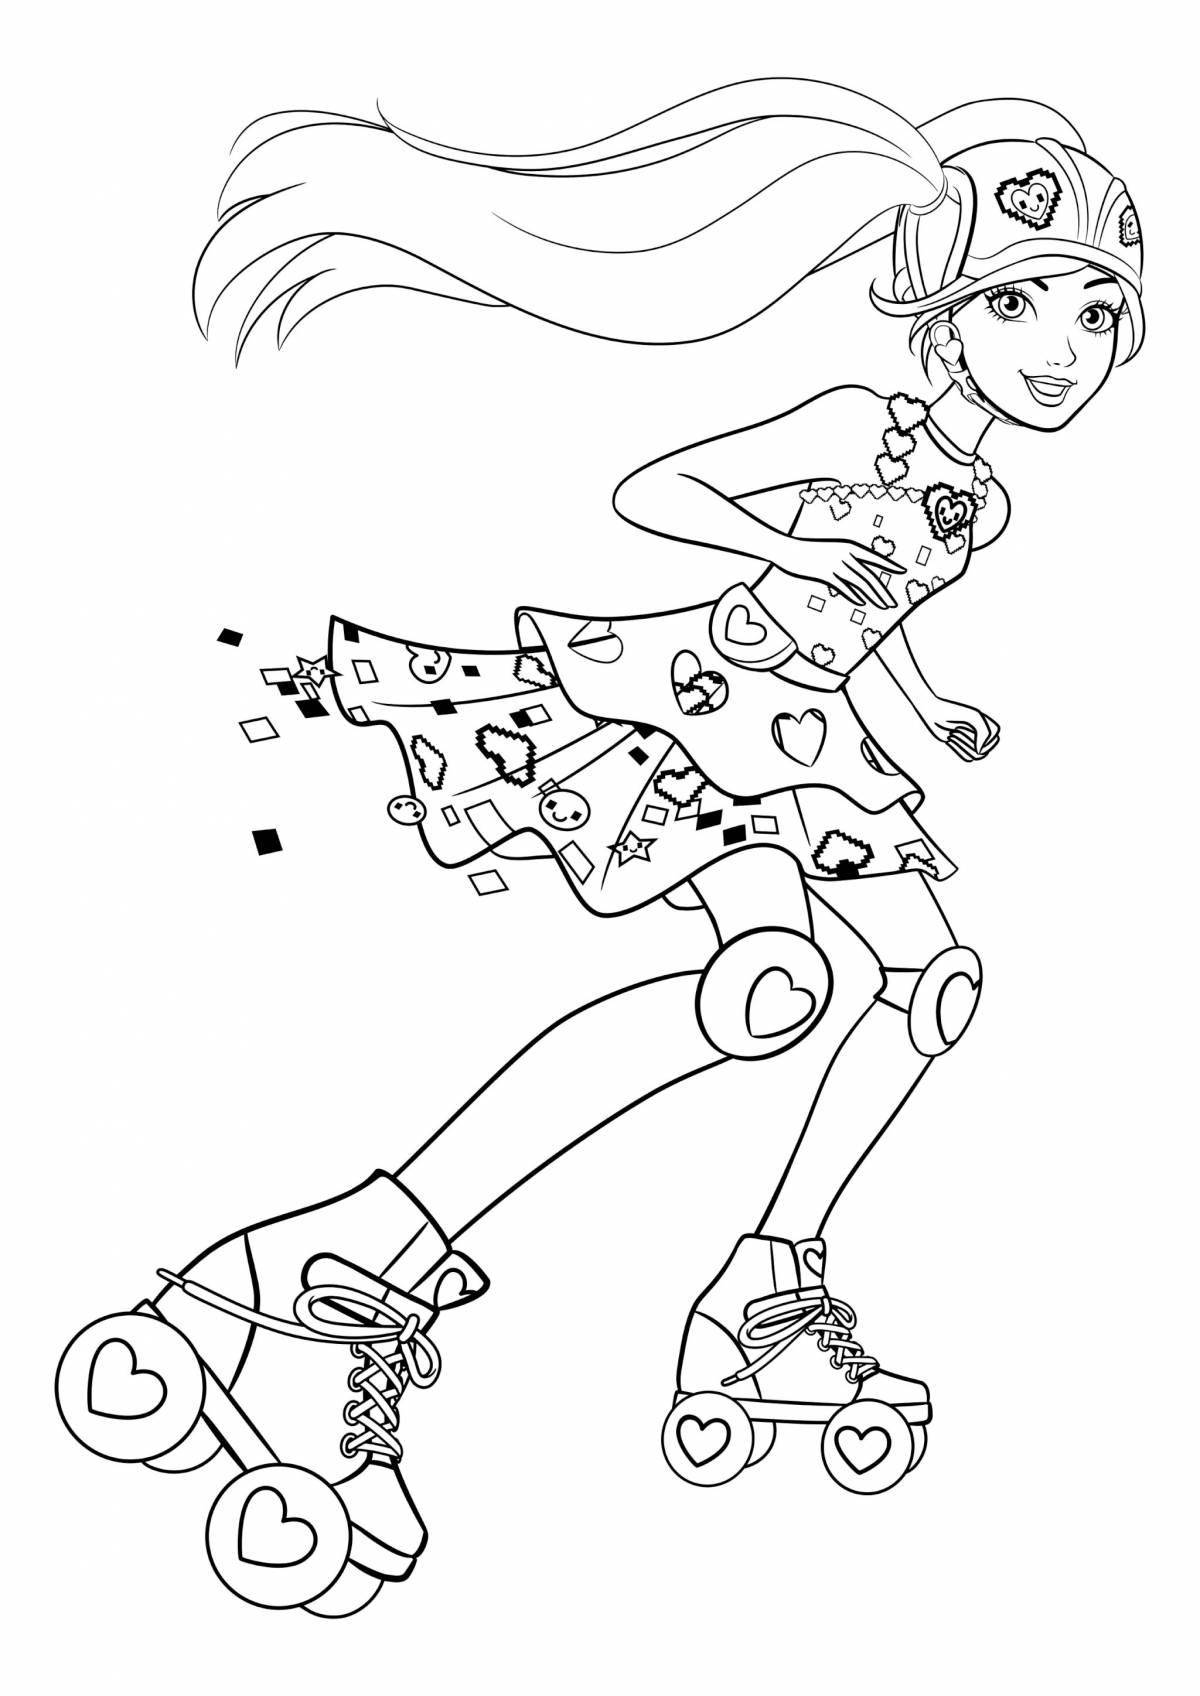 An animated girl on a skateboard